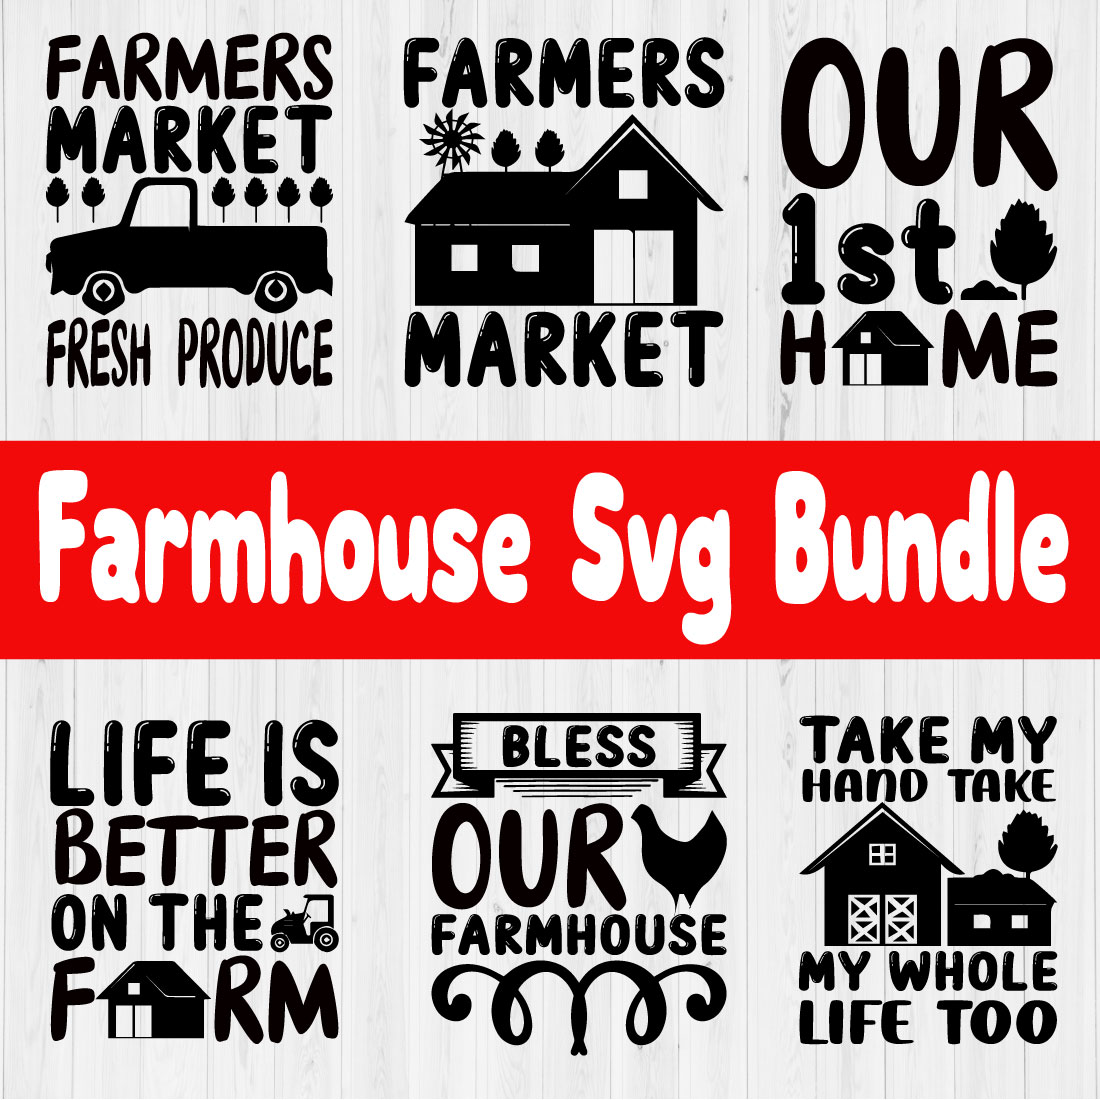 Farmhouse Svg Bundle Vol1 cover image.